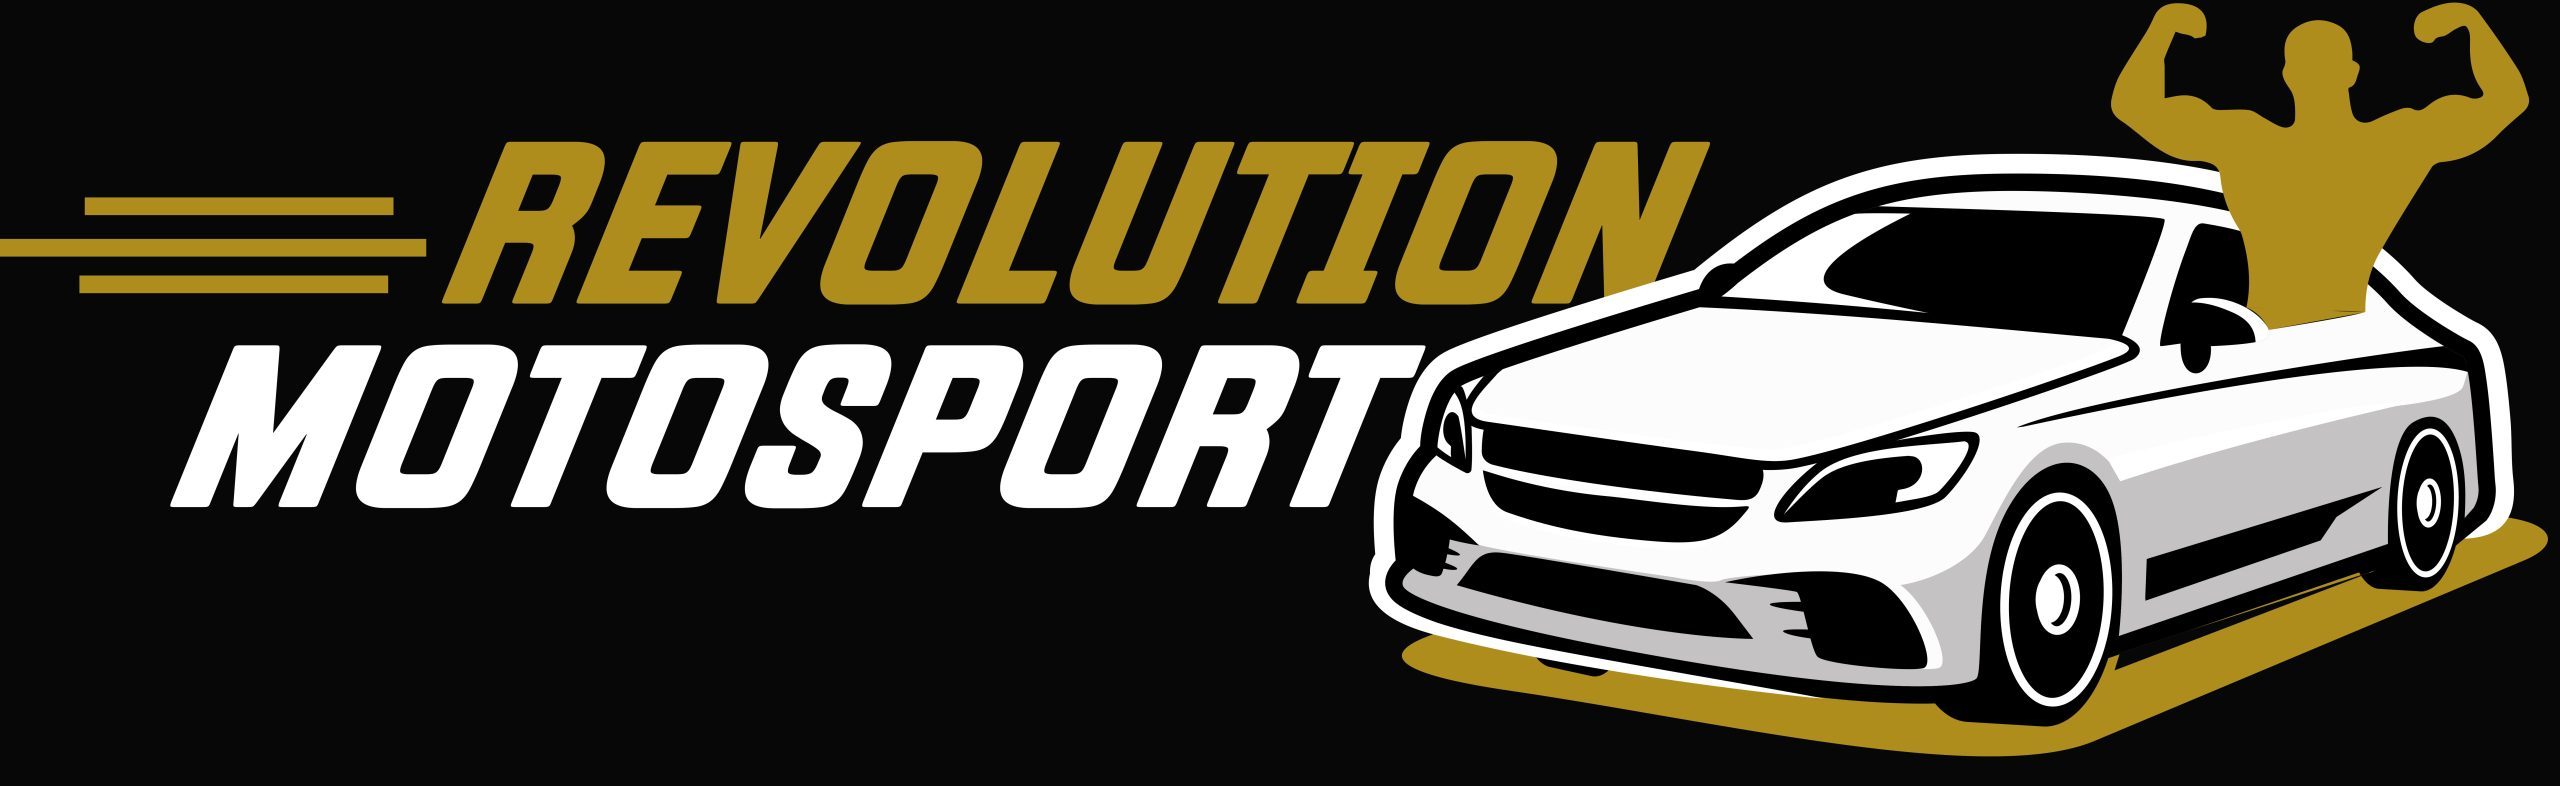 Revolution Motorsport LLC